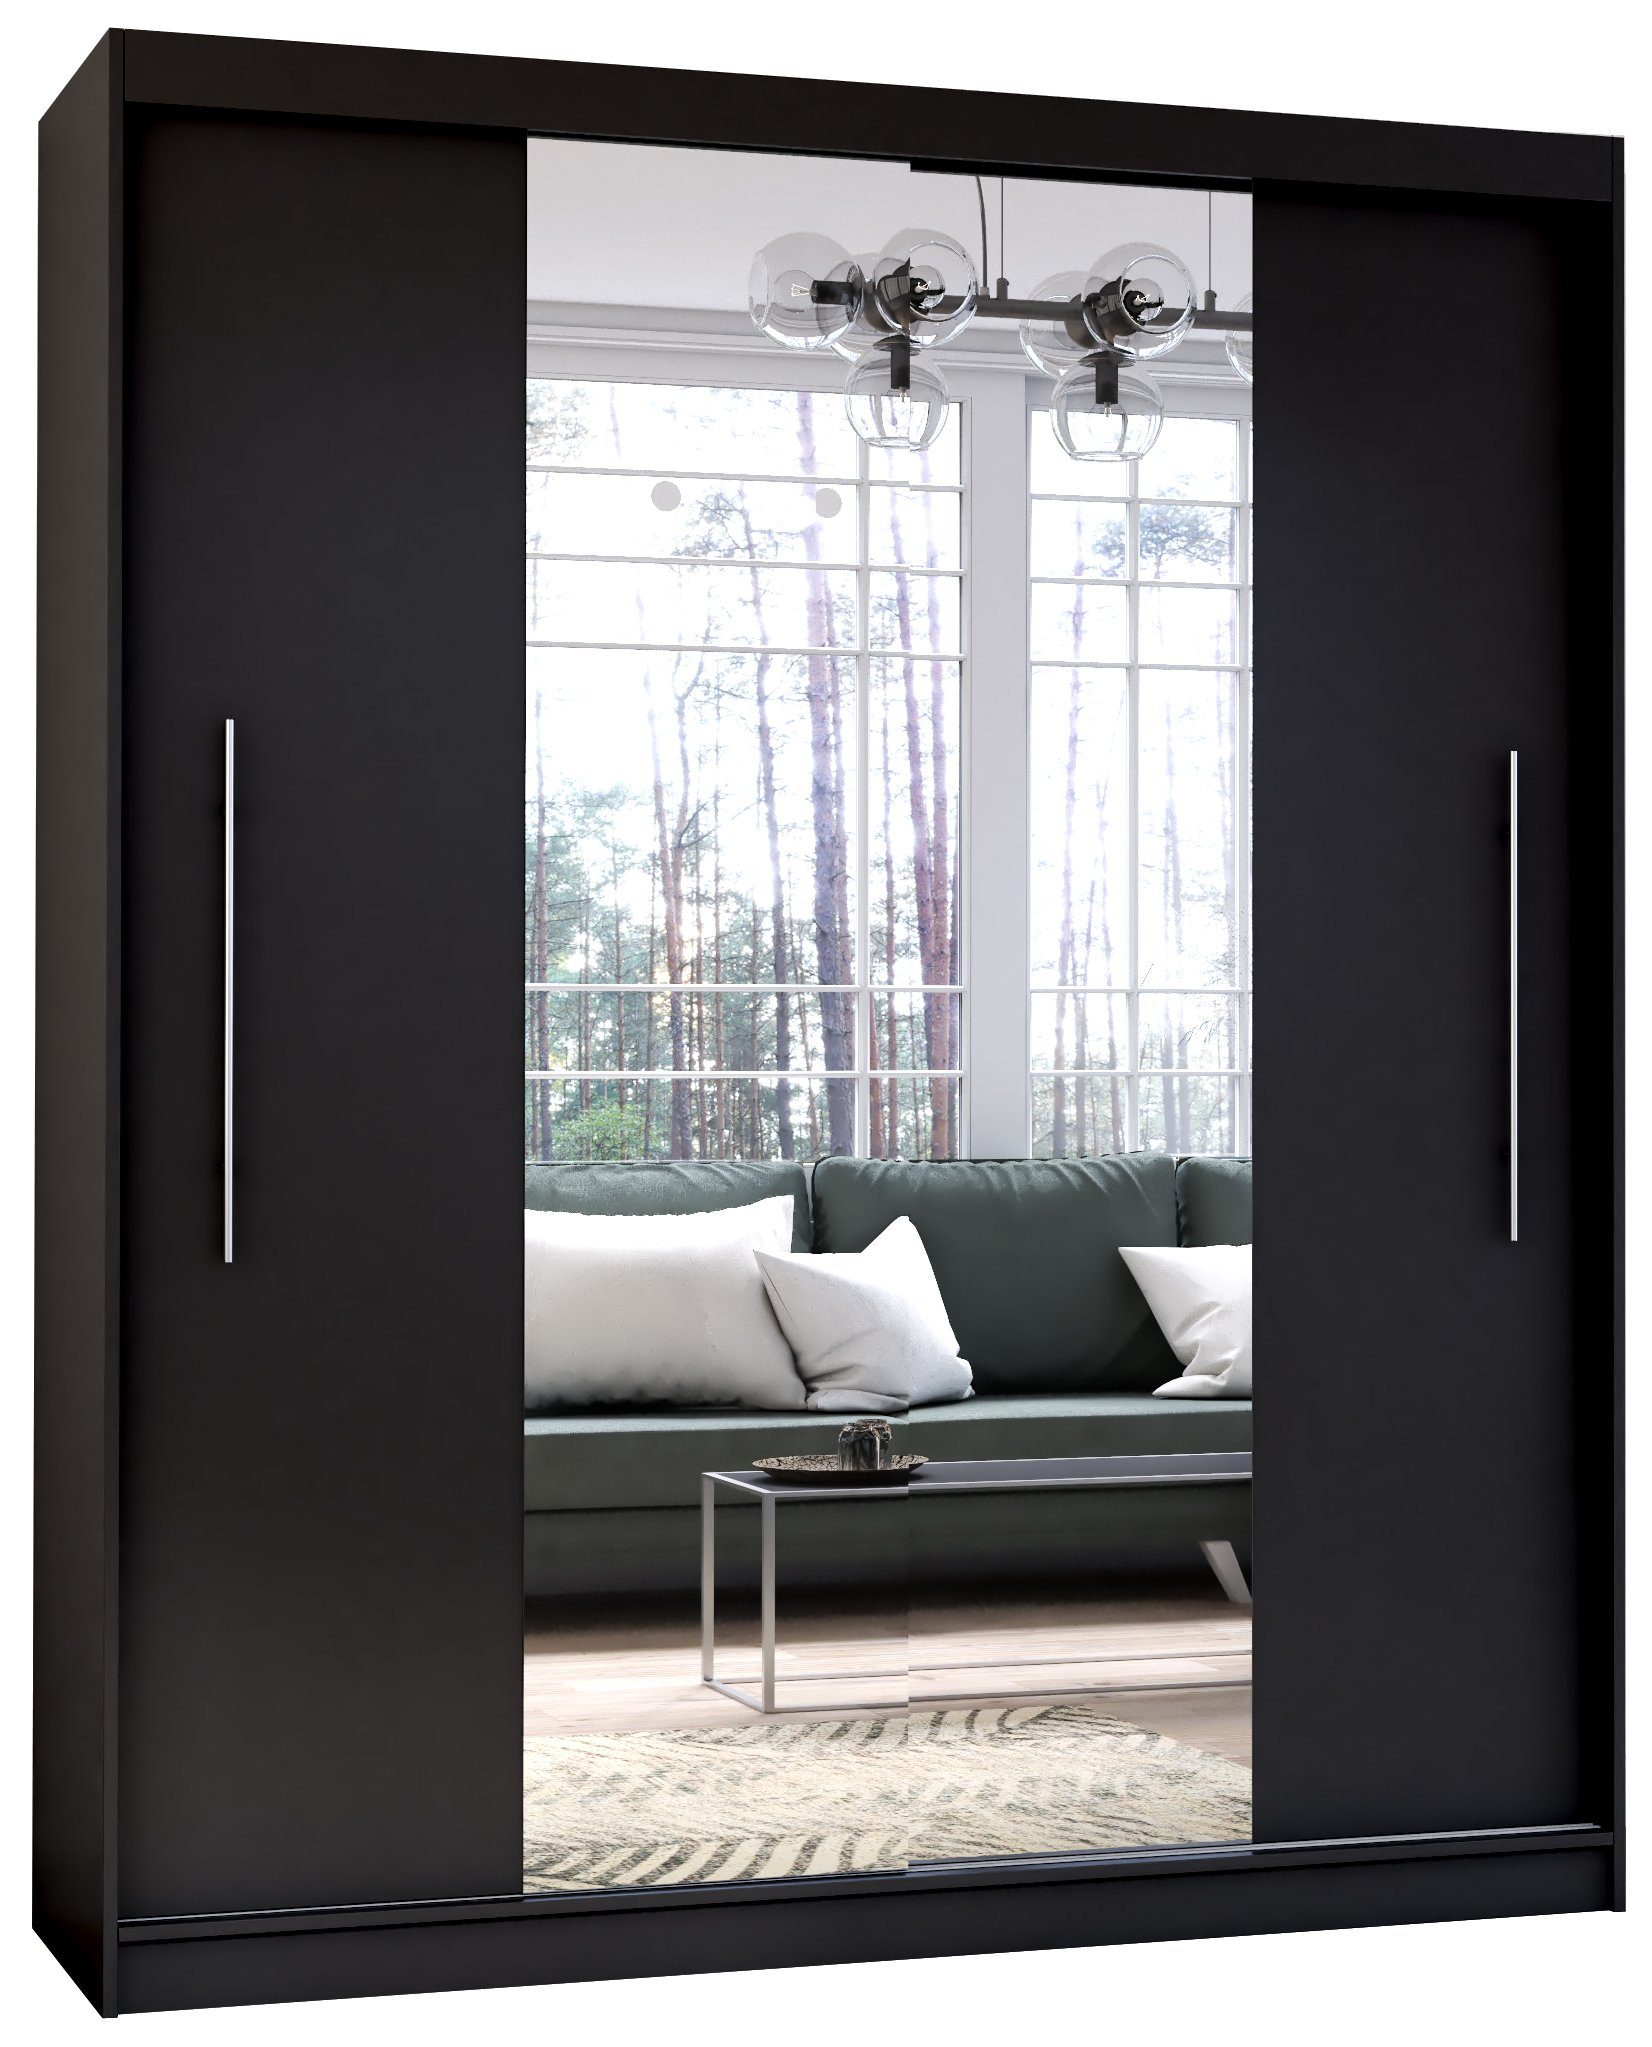 Polini Home Schwebetürenschrank Prime Comfort 204x218x58 cm Spiegel mittig in Schwarz schwarz | schwarz